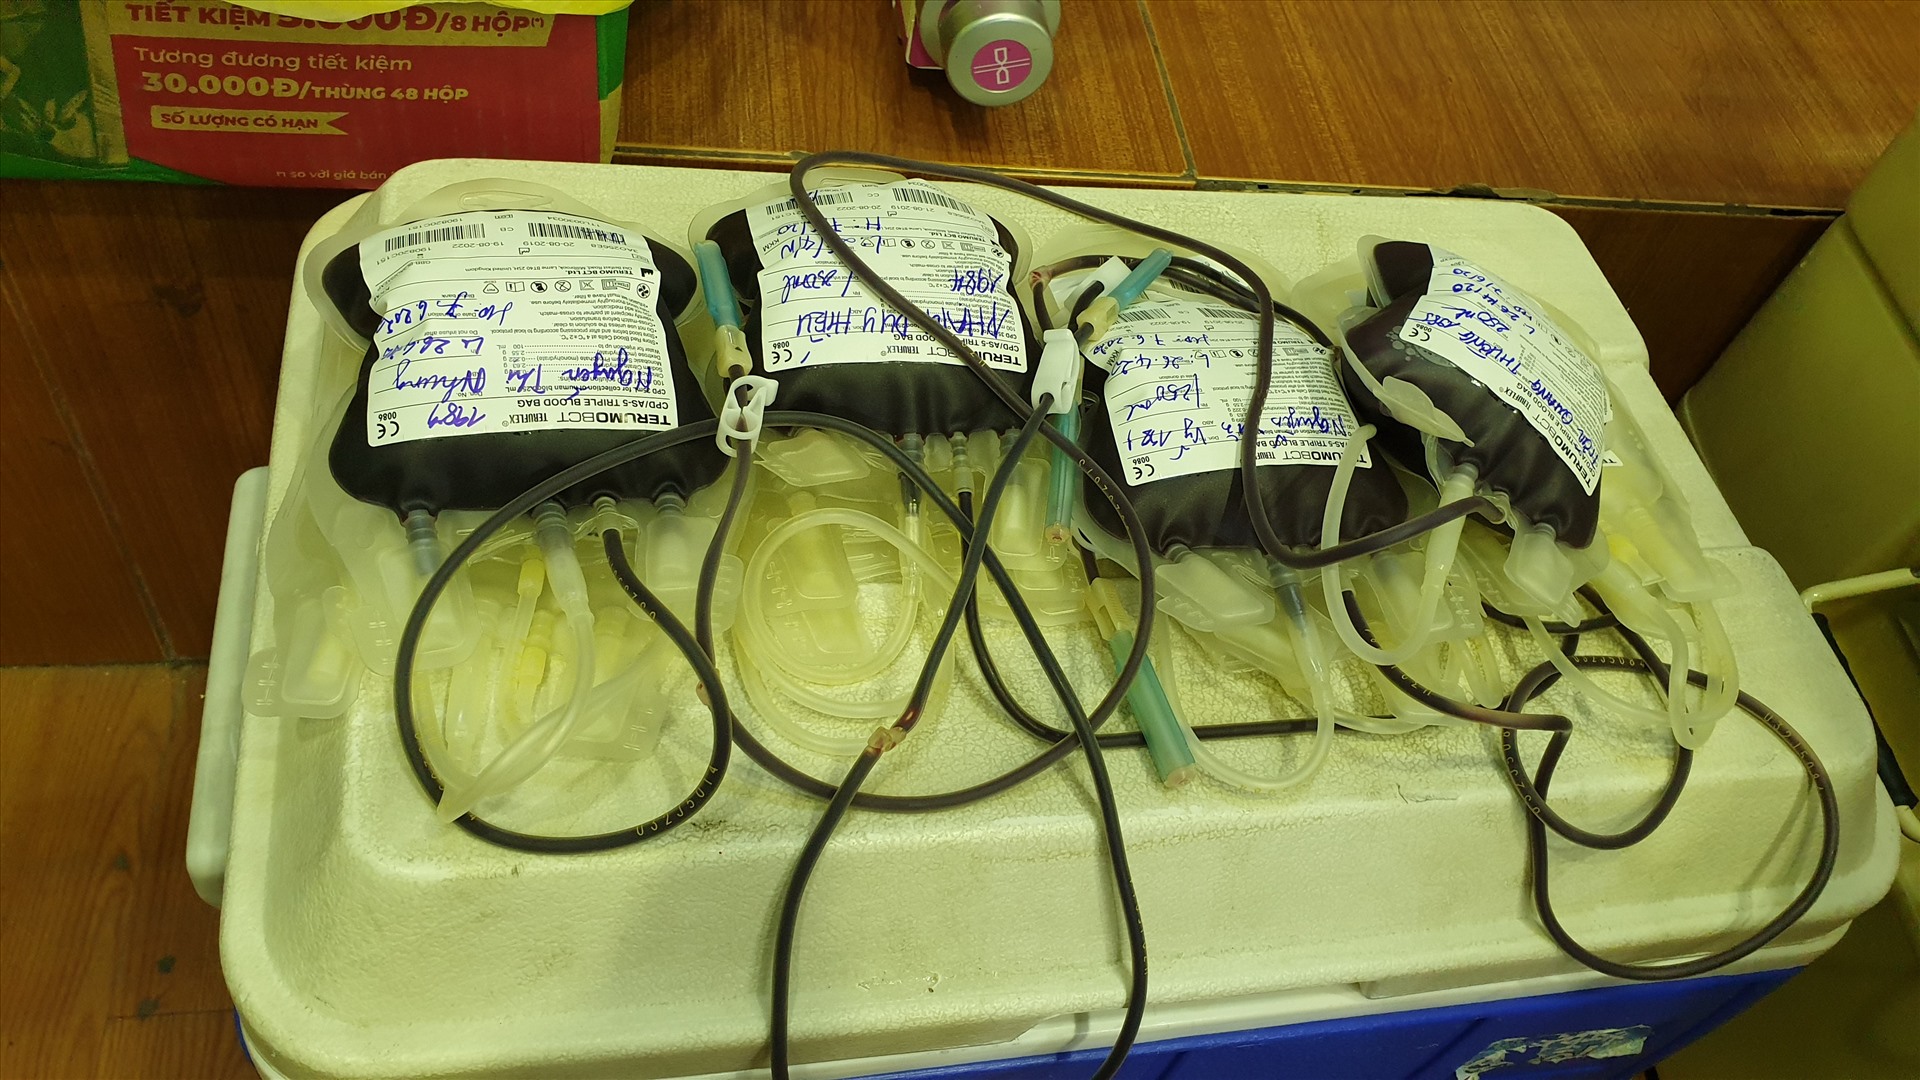 Hàng ngàn đơn vị máu của hàng ngàn đoàn viên thanh niên ngành than sẽ được chuyển tới các bệnh viện trong thời gian tới. Ảnh: Nguyễn Hùng